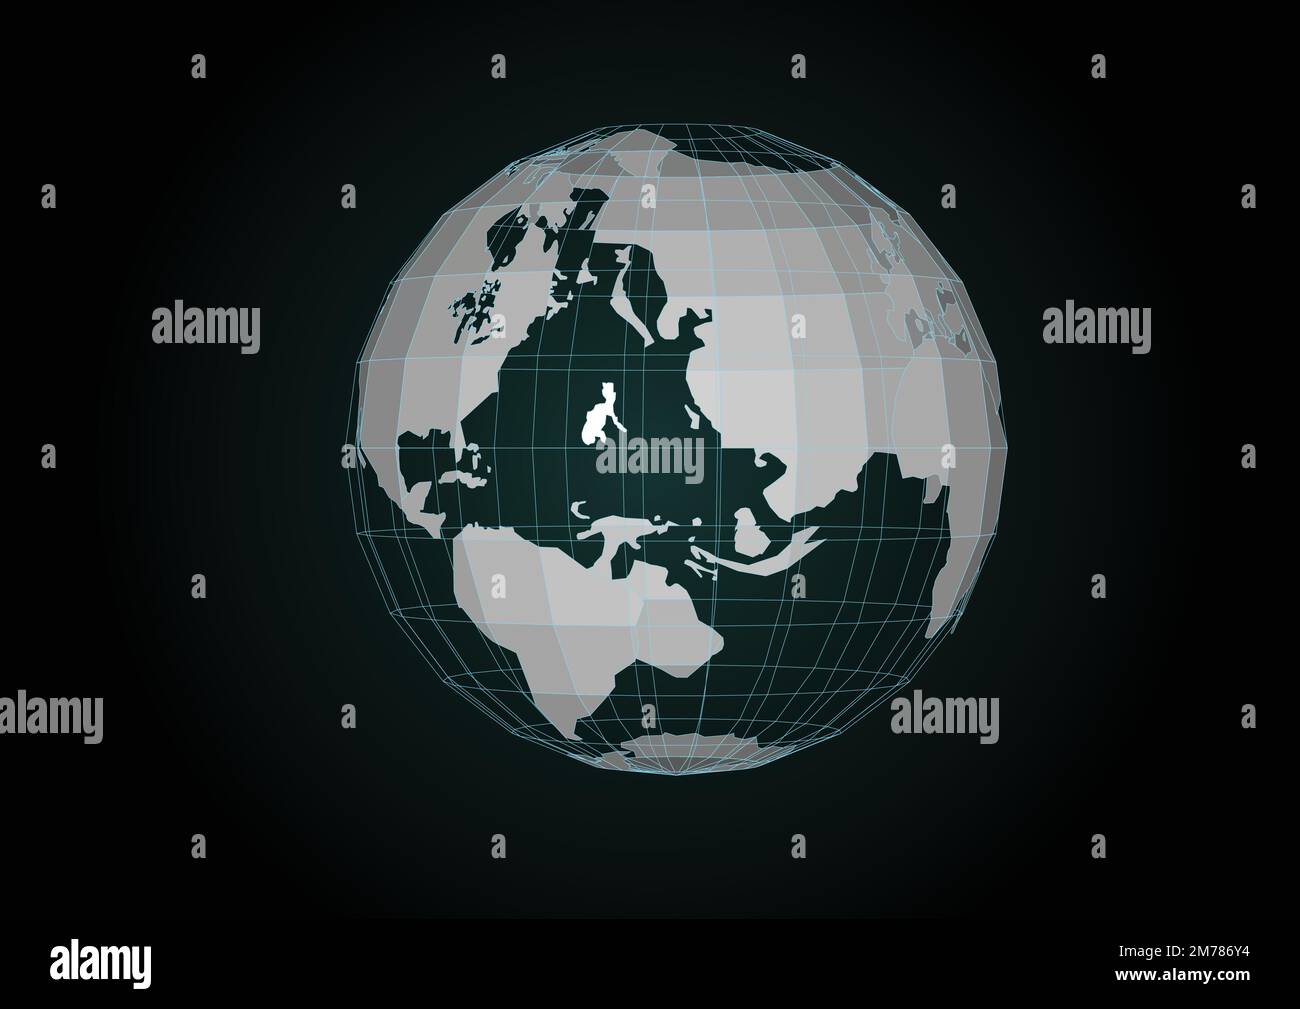 Vecteur. Carte de la planète. Carte du monde. Réseau social mondial. Futur. Fond bleu futuriste avec planète Terre. Internet et technologie. Flottant b Illustration de Vecteur